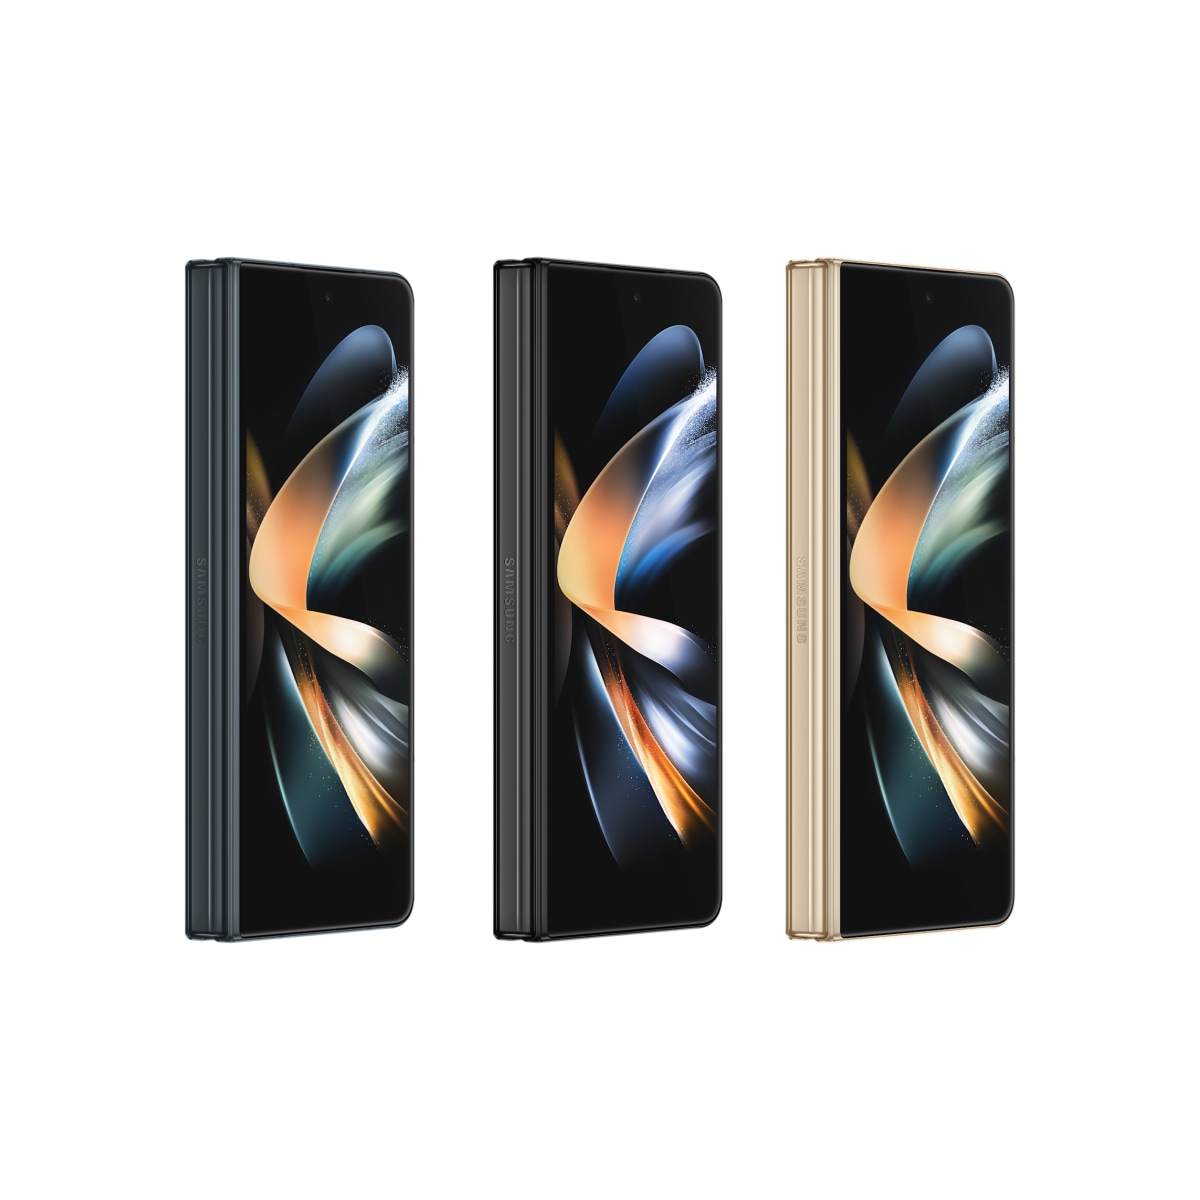 Galaxy Z Fold 4 5G: Sự kết hợp độc đáo giữa công nghệ 5G và màn hình gập duy nhất, chiếc điện thoại Galaxy Z Fold 4 sẽ làm cho cuộc sống của bạn trở nên tuyệt vời hơn. Bạn sẽ trải nghiệm được tốc độ truy cập mạng không giới hạn và màn hình lớn cho trải nghiệm giải trí ấn tượng.